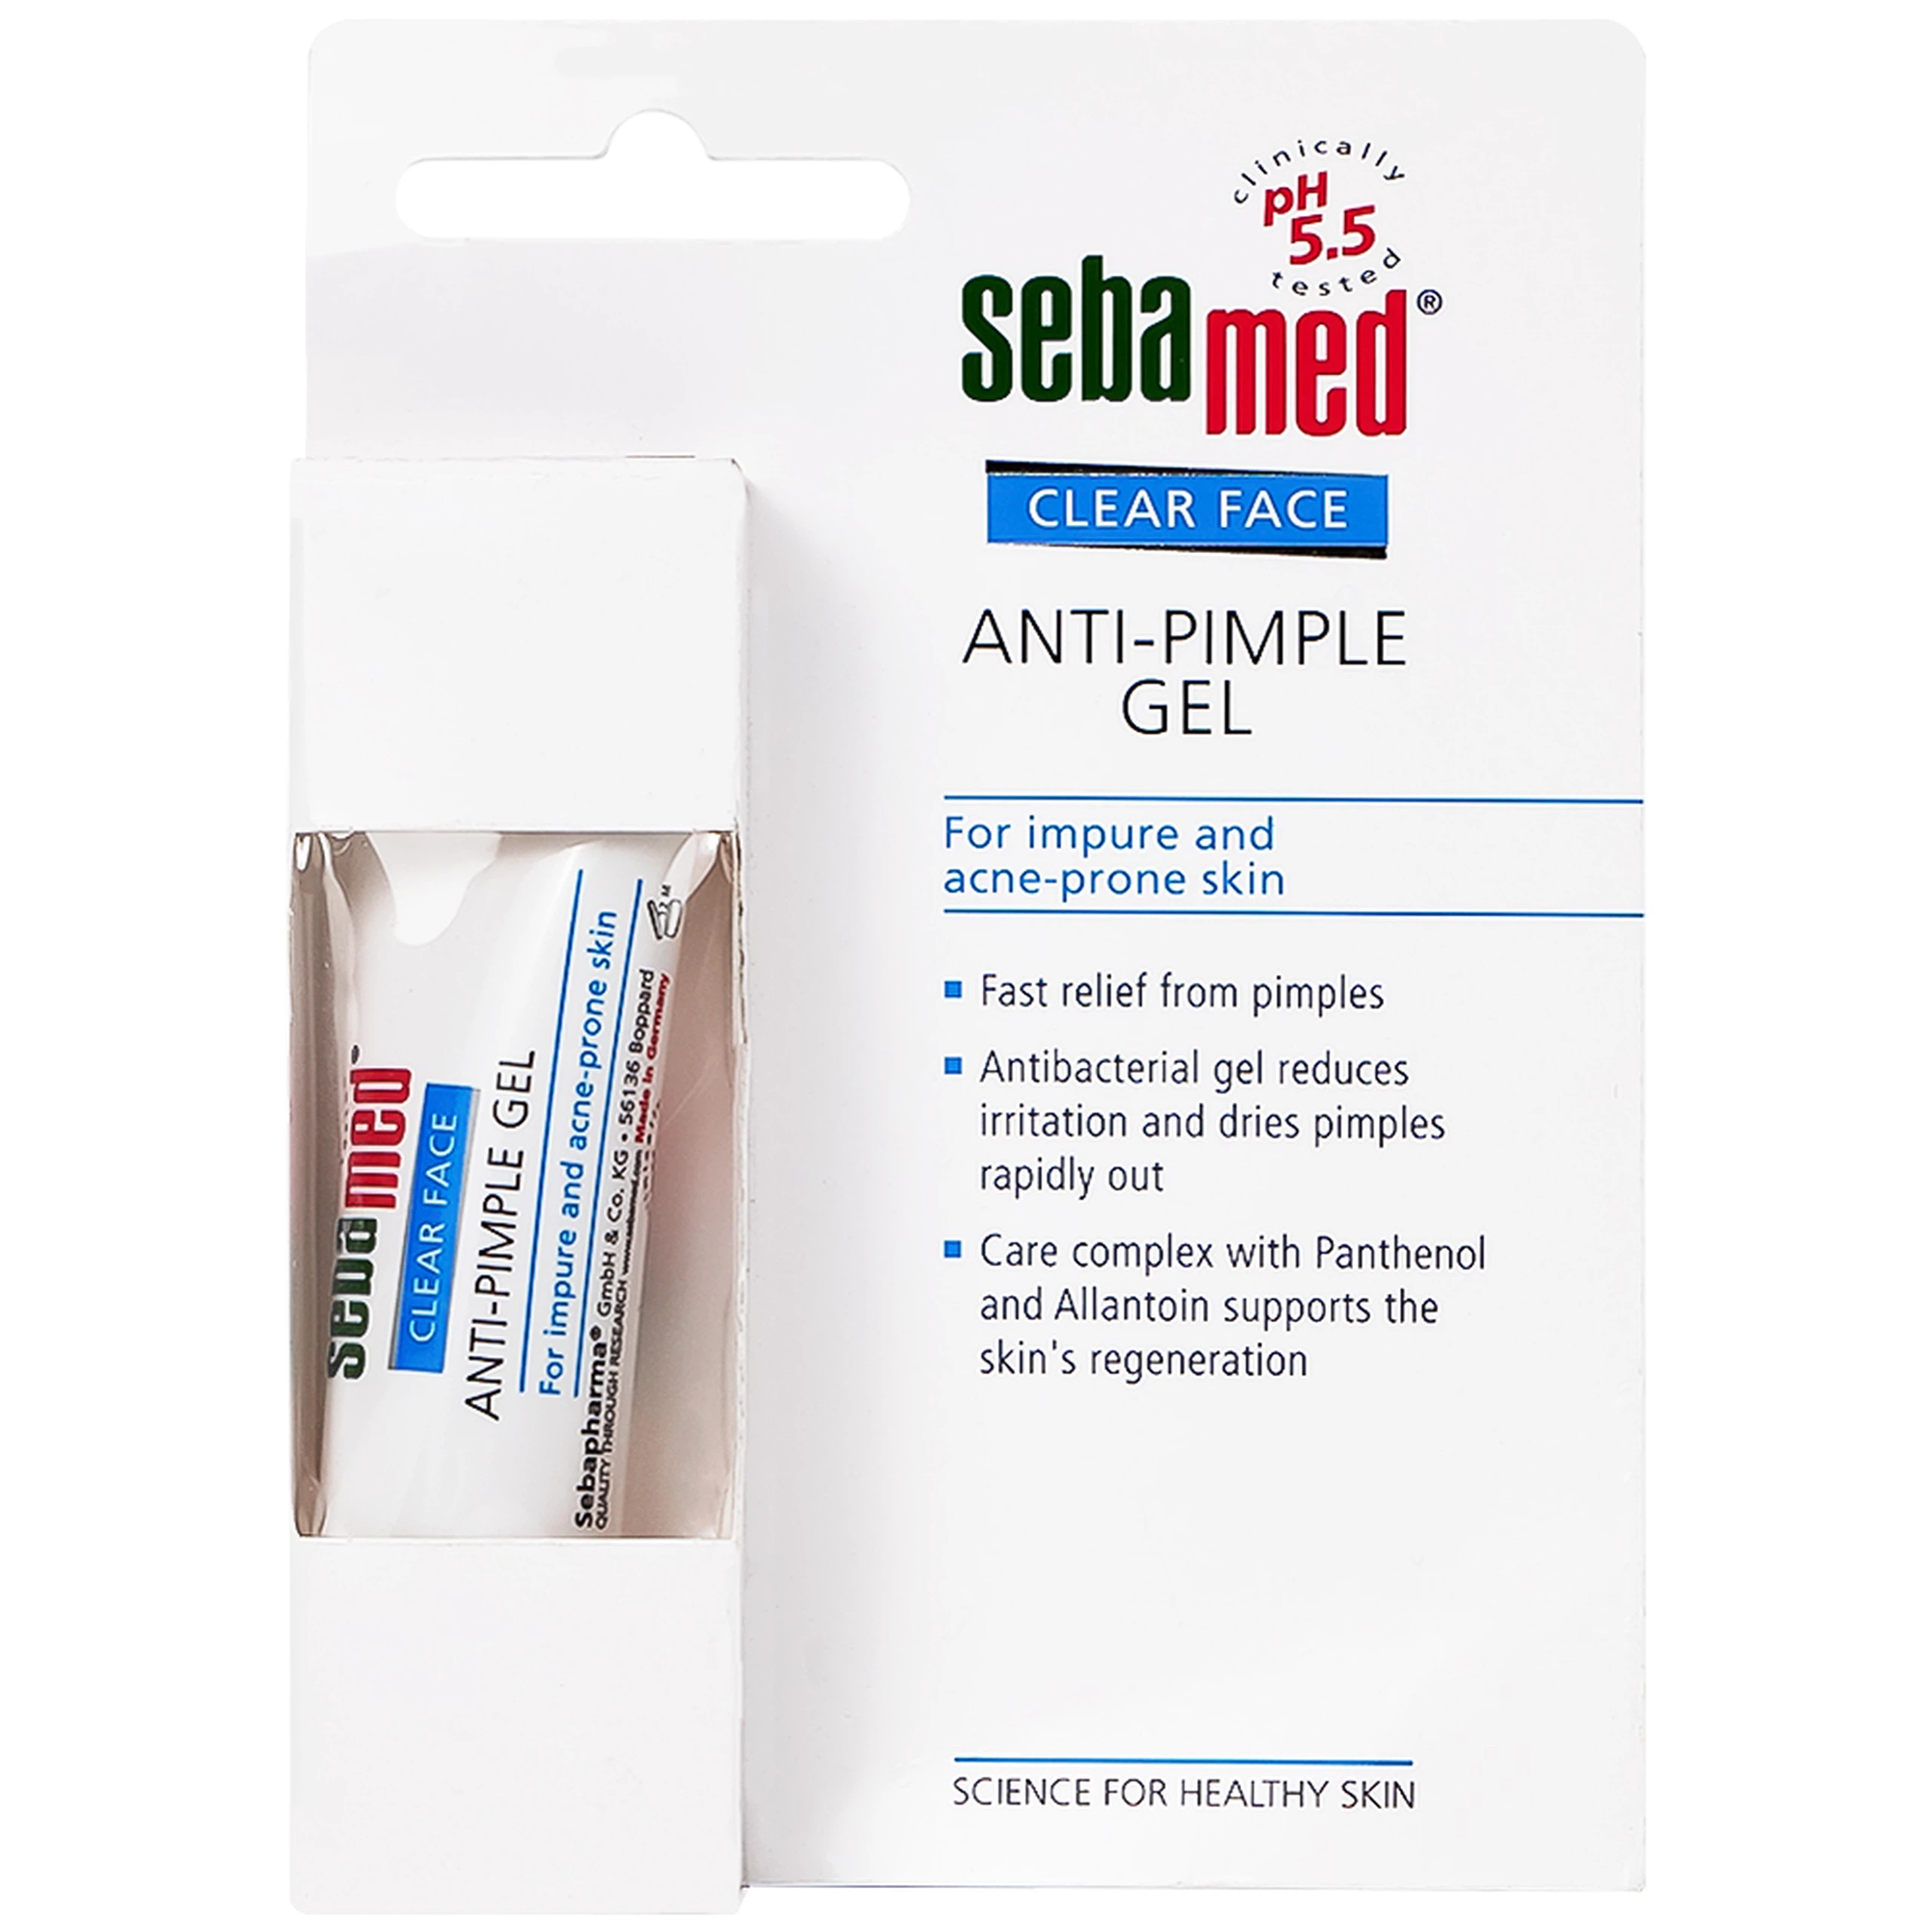 Gel Clear Face Anti-Pimple Sebamed pH 5.5 giúp làm giảm mụn,ngăn ngừa mụn, dưỡng ẩm (10ml)